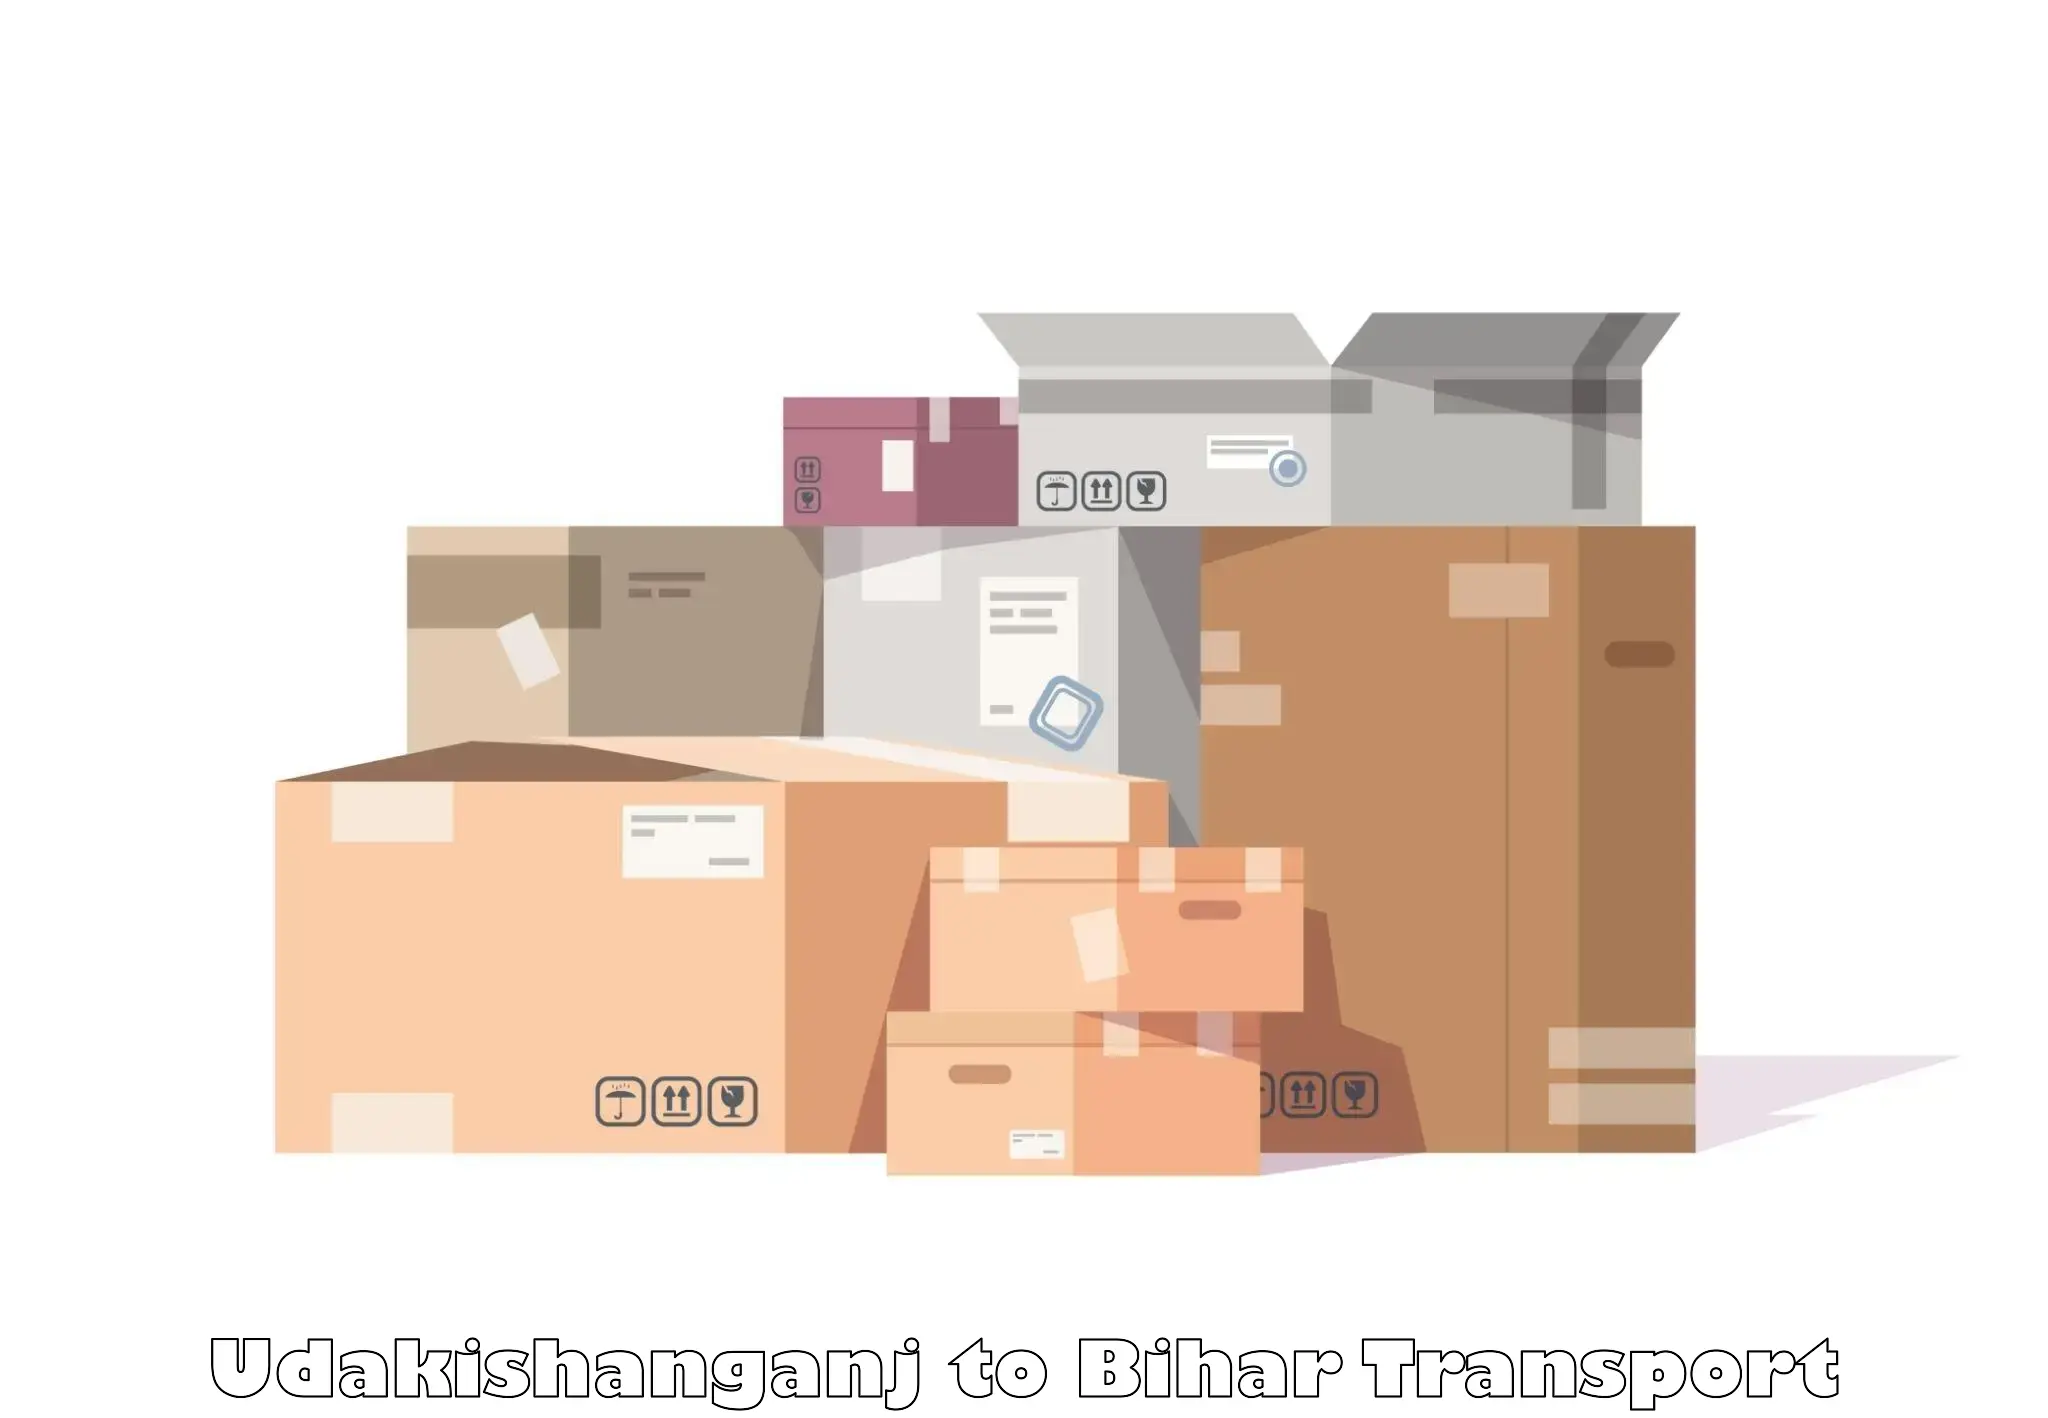 Vehicle parcel service Udakishanganj to Khagaria